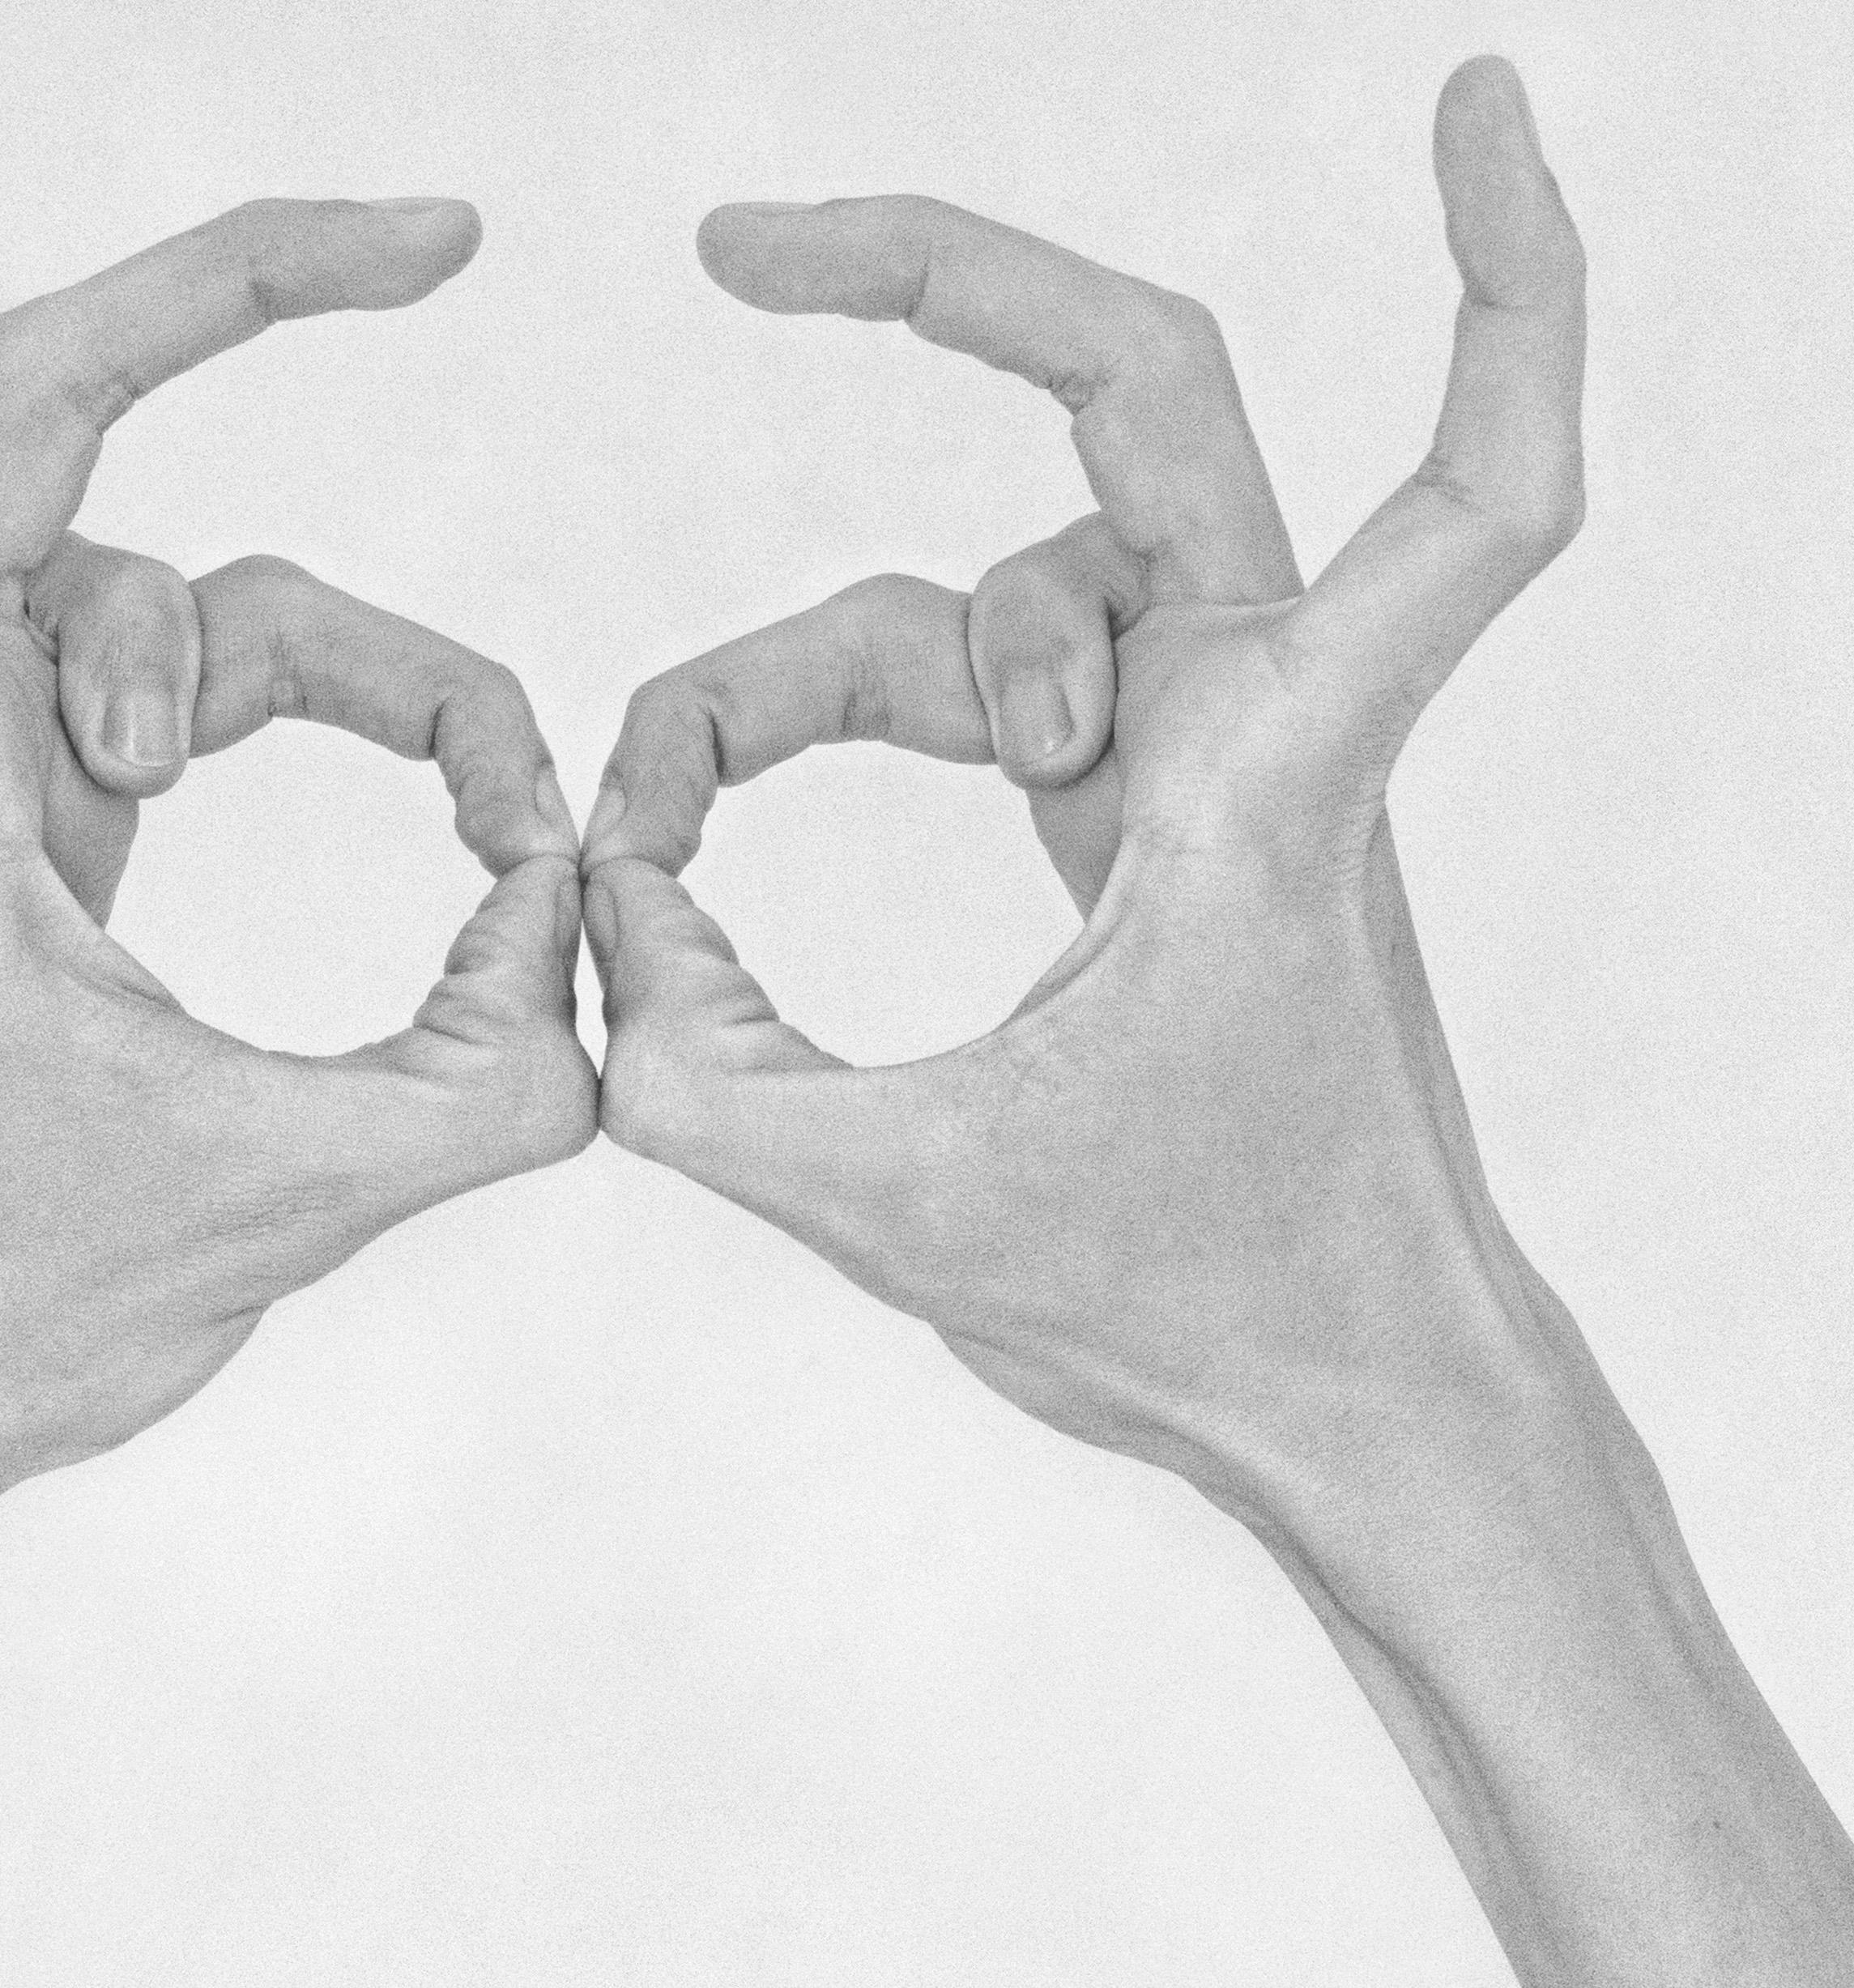 Ohne Titel XX. Aus der Serie Chiromorphose. Die Hände. Schwarzweiß-Fotografie (Ästhetizismus), Photograph, von Nico Baixas / Gos-com-fuig